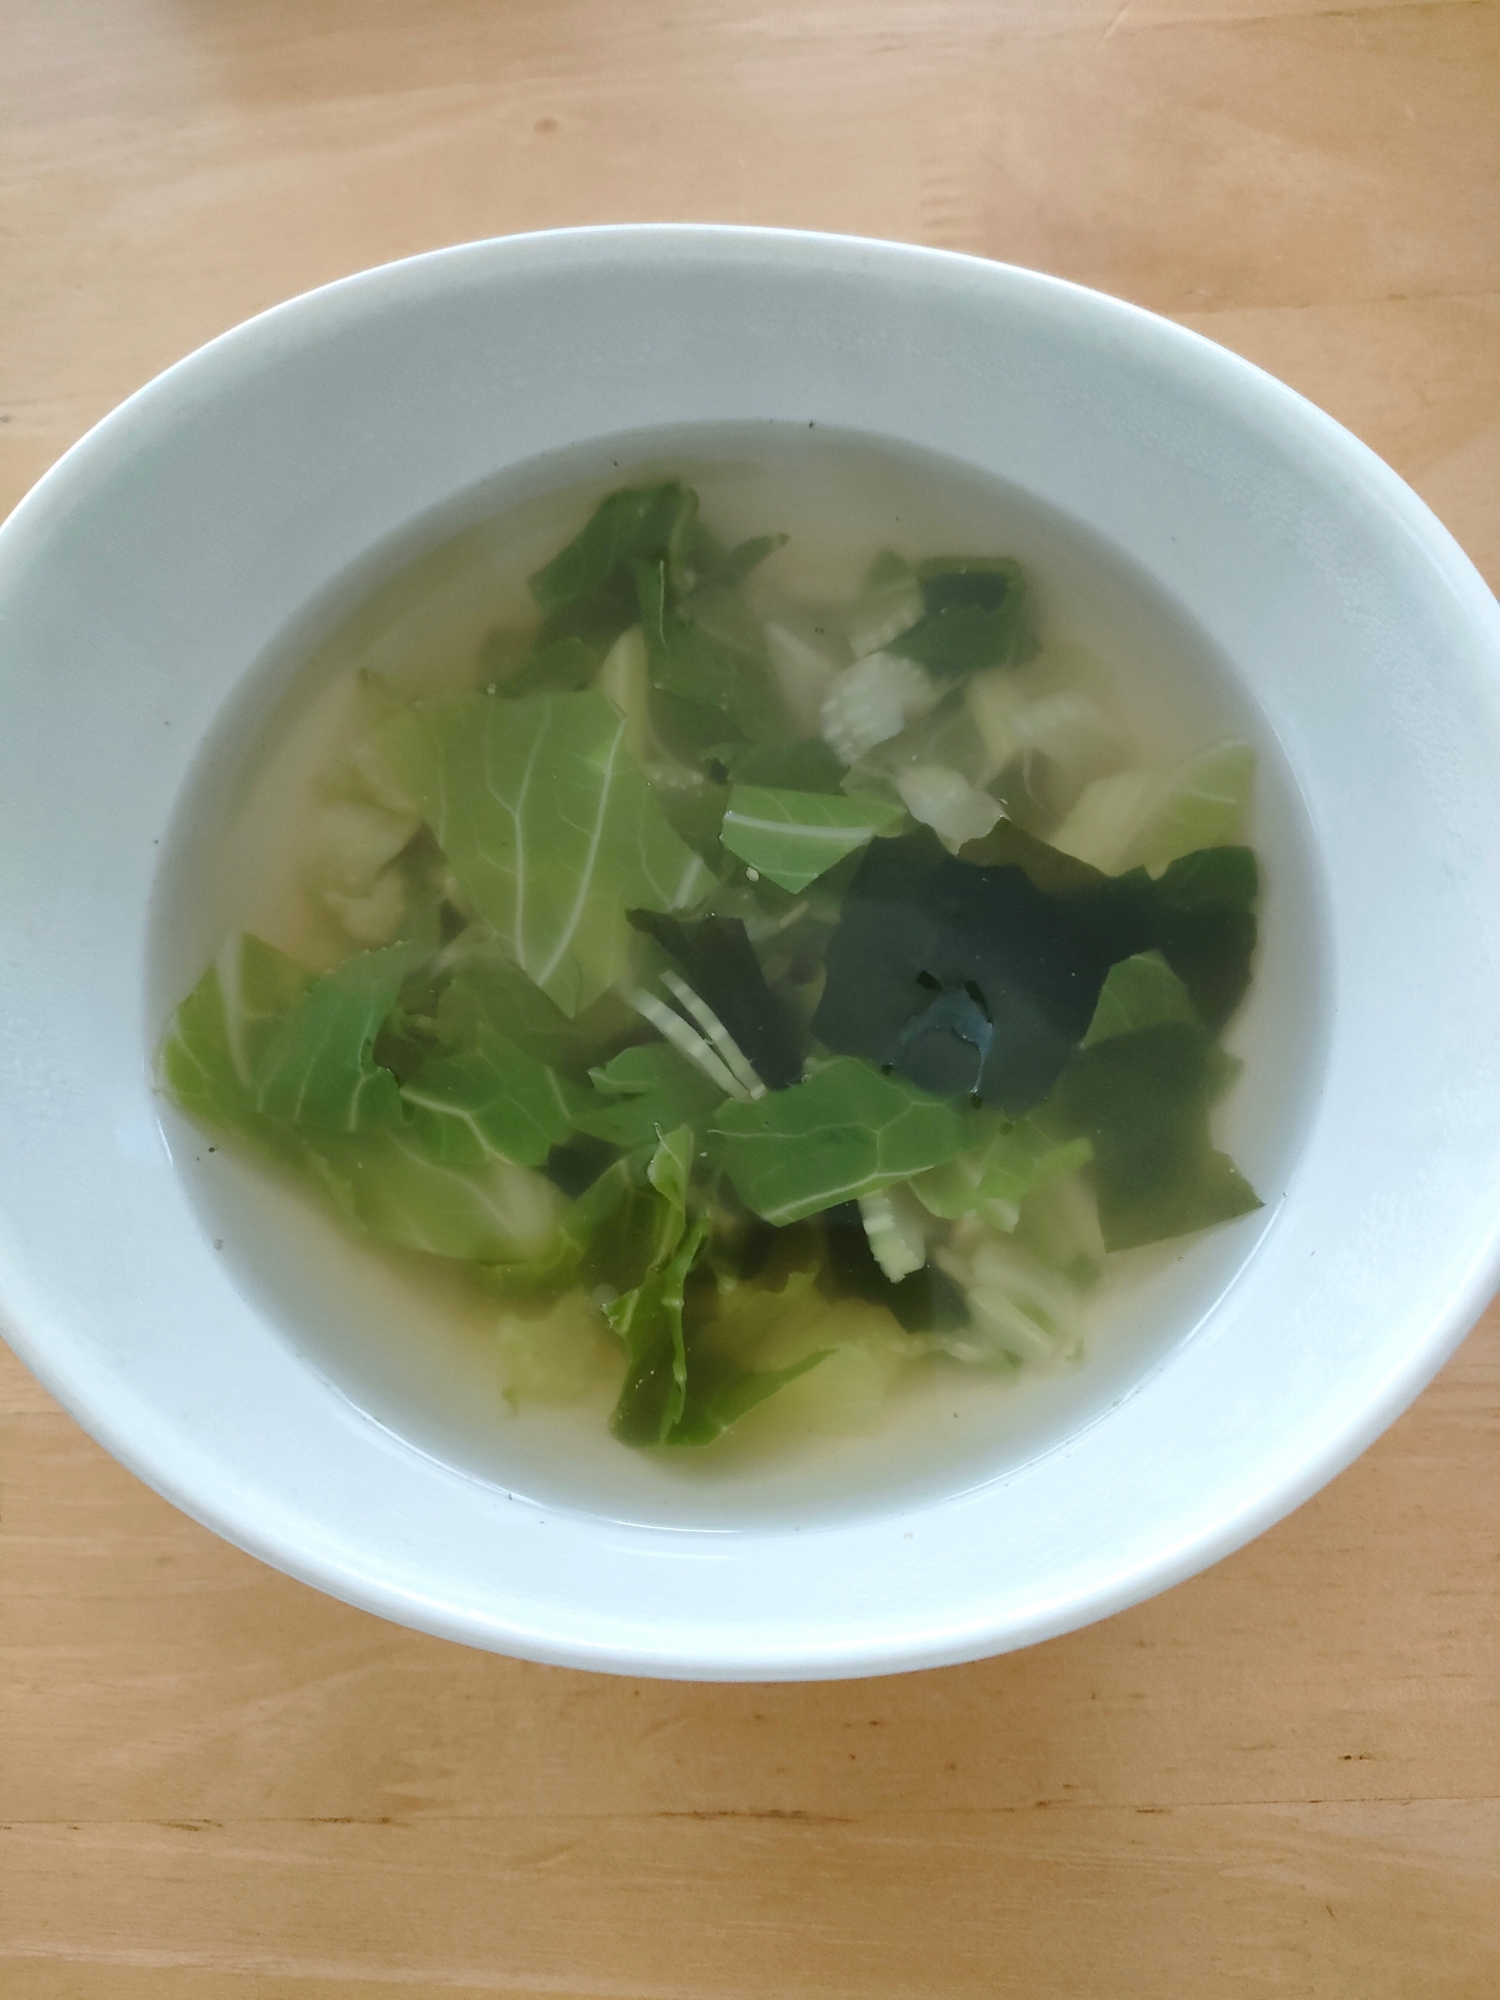 大根の葉スープ